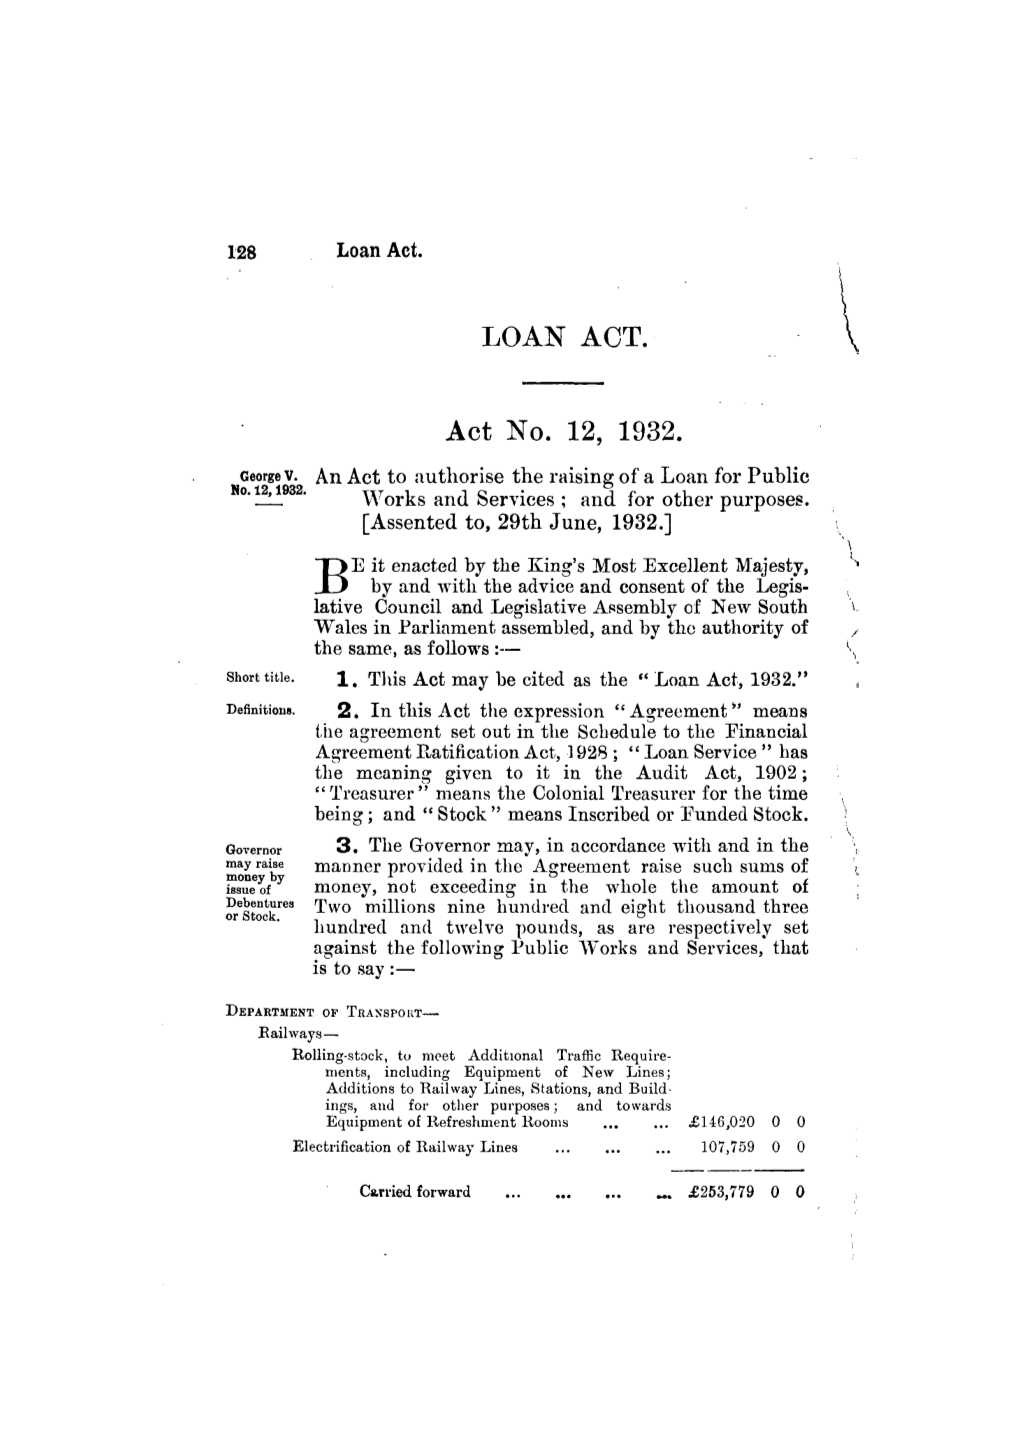 LOAN ACT. Act No. 12, 1932